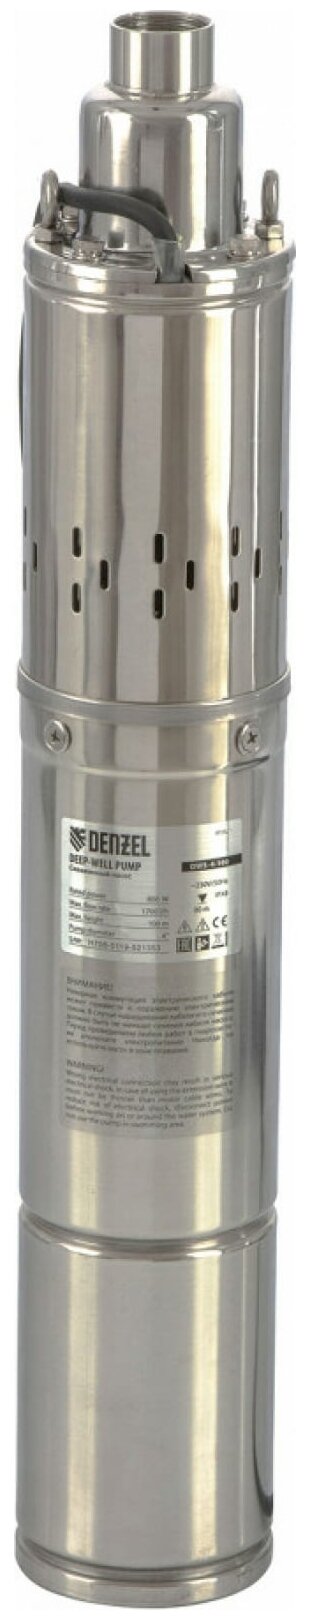 Скважинный насос DWS-4-100, винтовой, диаметр 4", 800 Вт, 1700 л/ч, напор 100 м Denzel Denzel